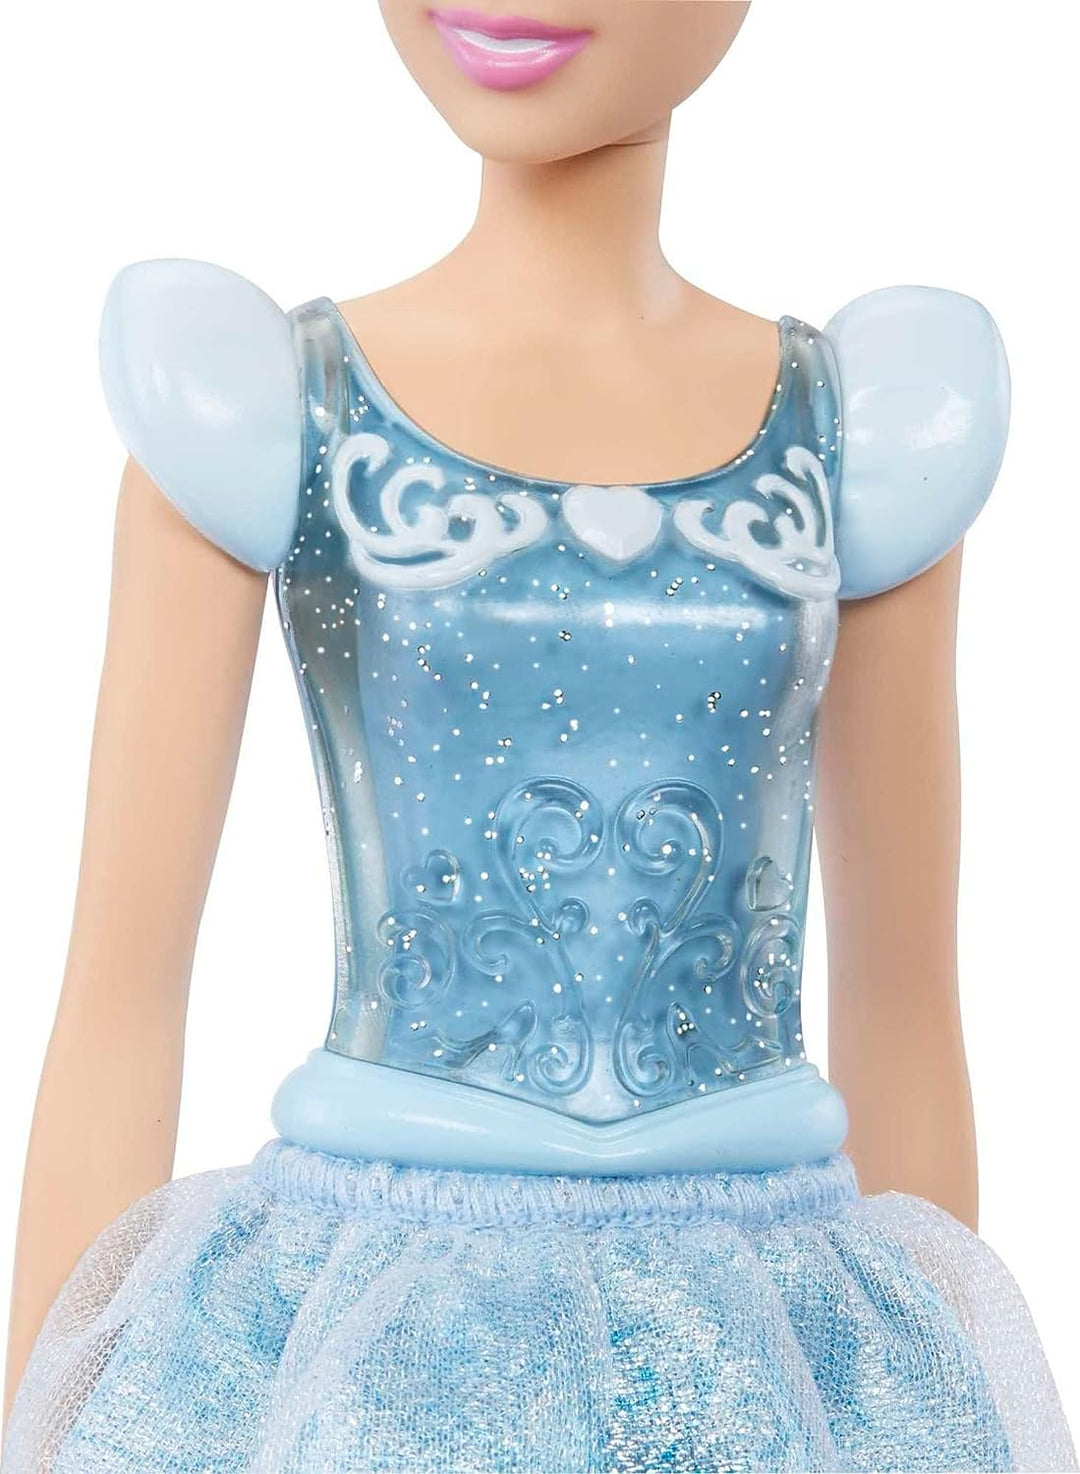 Disney Princess Toys, bewegliche Modepuppe Cinderella mit funkelnder Kleidung und